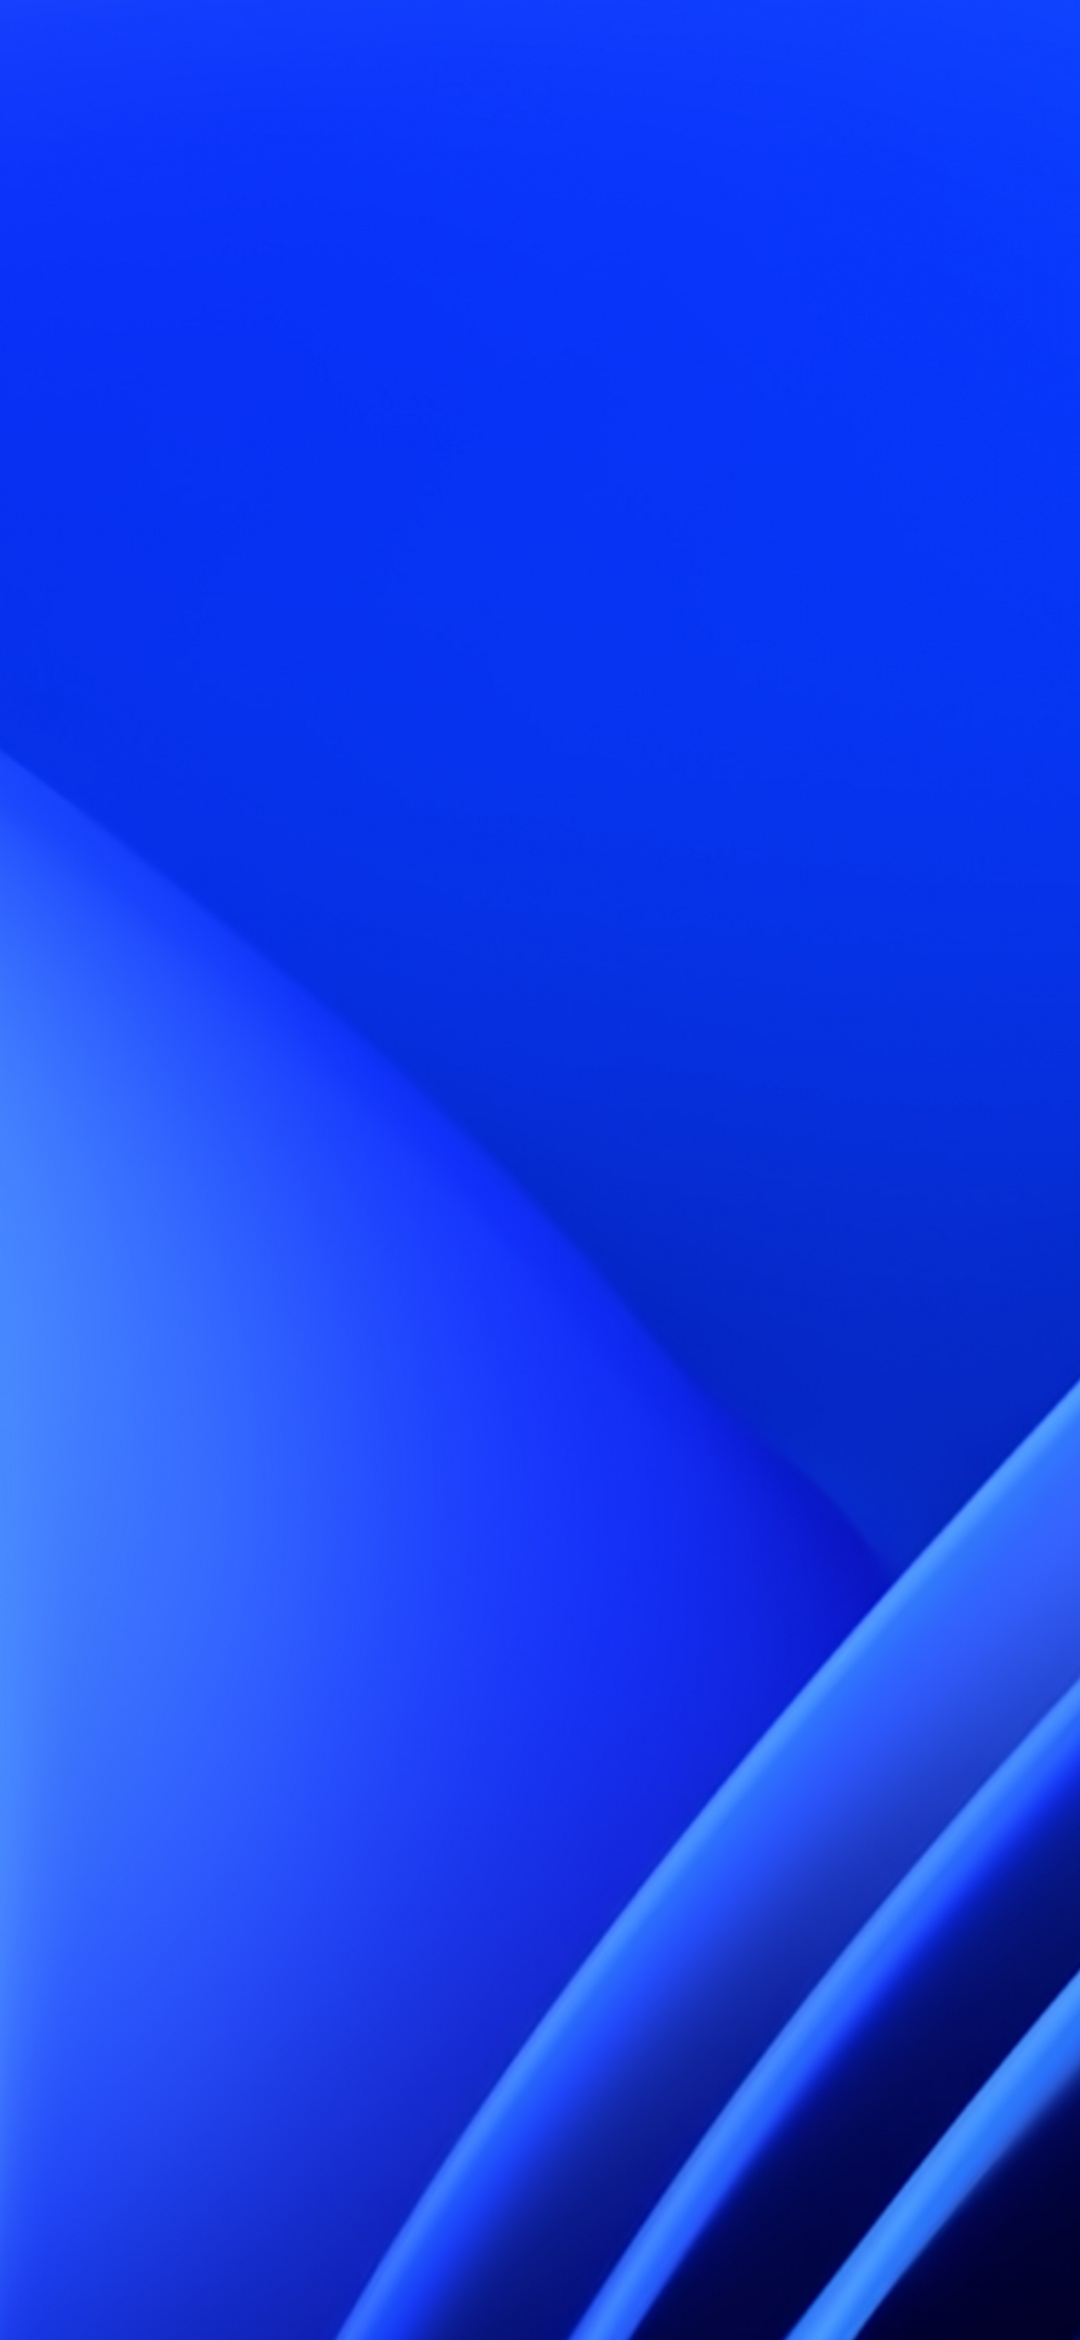 Với hình nền Windows 11 màu xanh, bạn sẽ được tận hưởng phong cách mới mẻ và hiện đại cho chiếc máy tính của mình. Sắc xanh sẽ mang lại nhiều cảm xúc thoải mái, tươi mới và tinh thần sáng tạo.